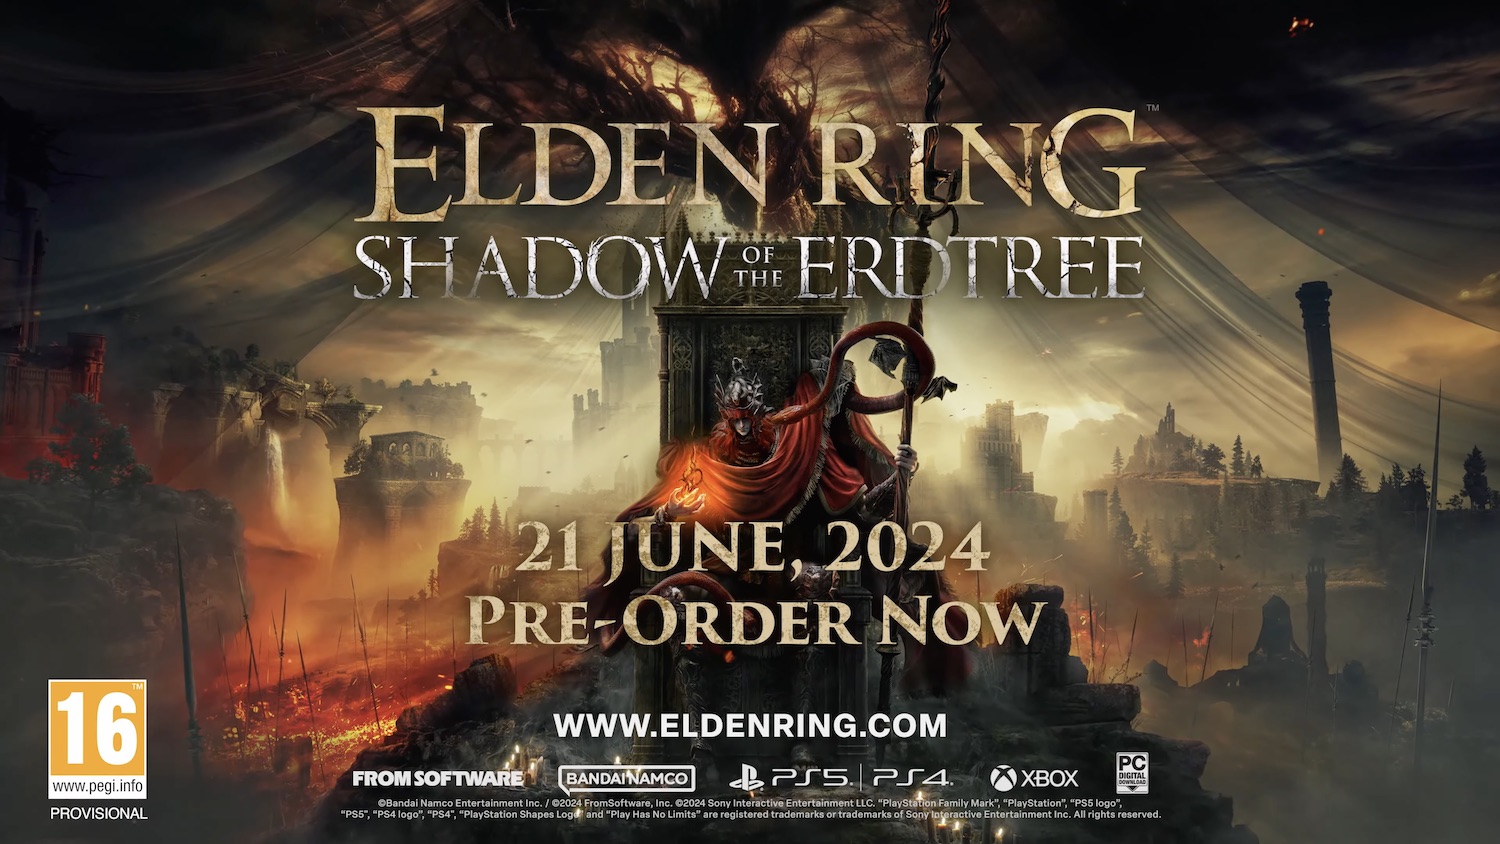 'Elden Ring: Shadow of the Erdtree' launches June 21